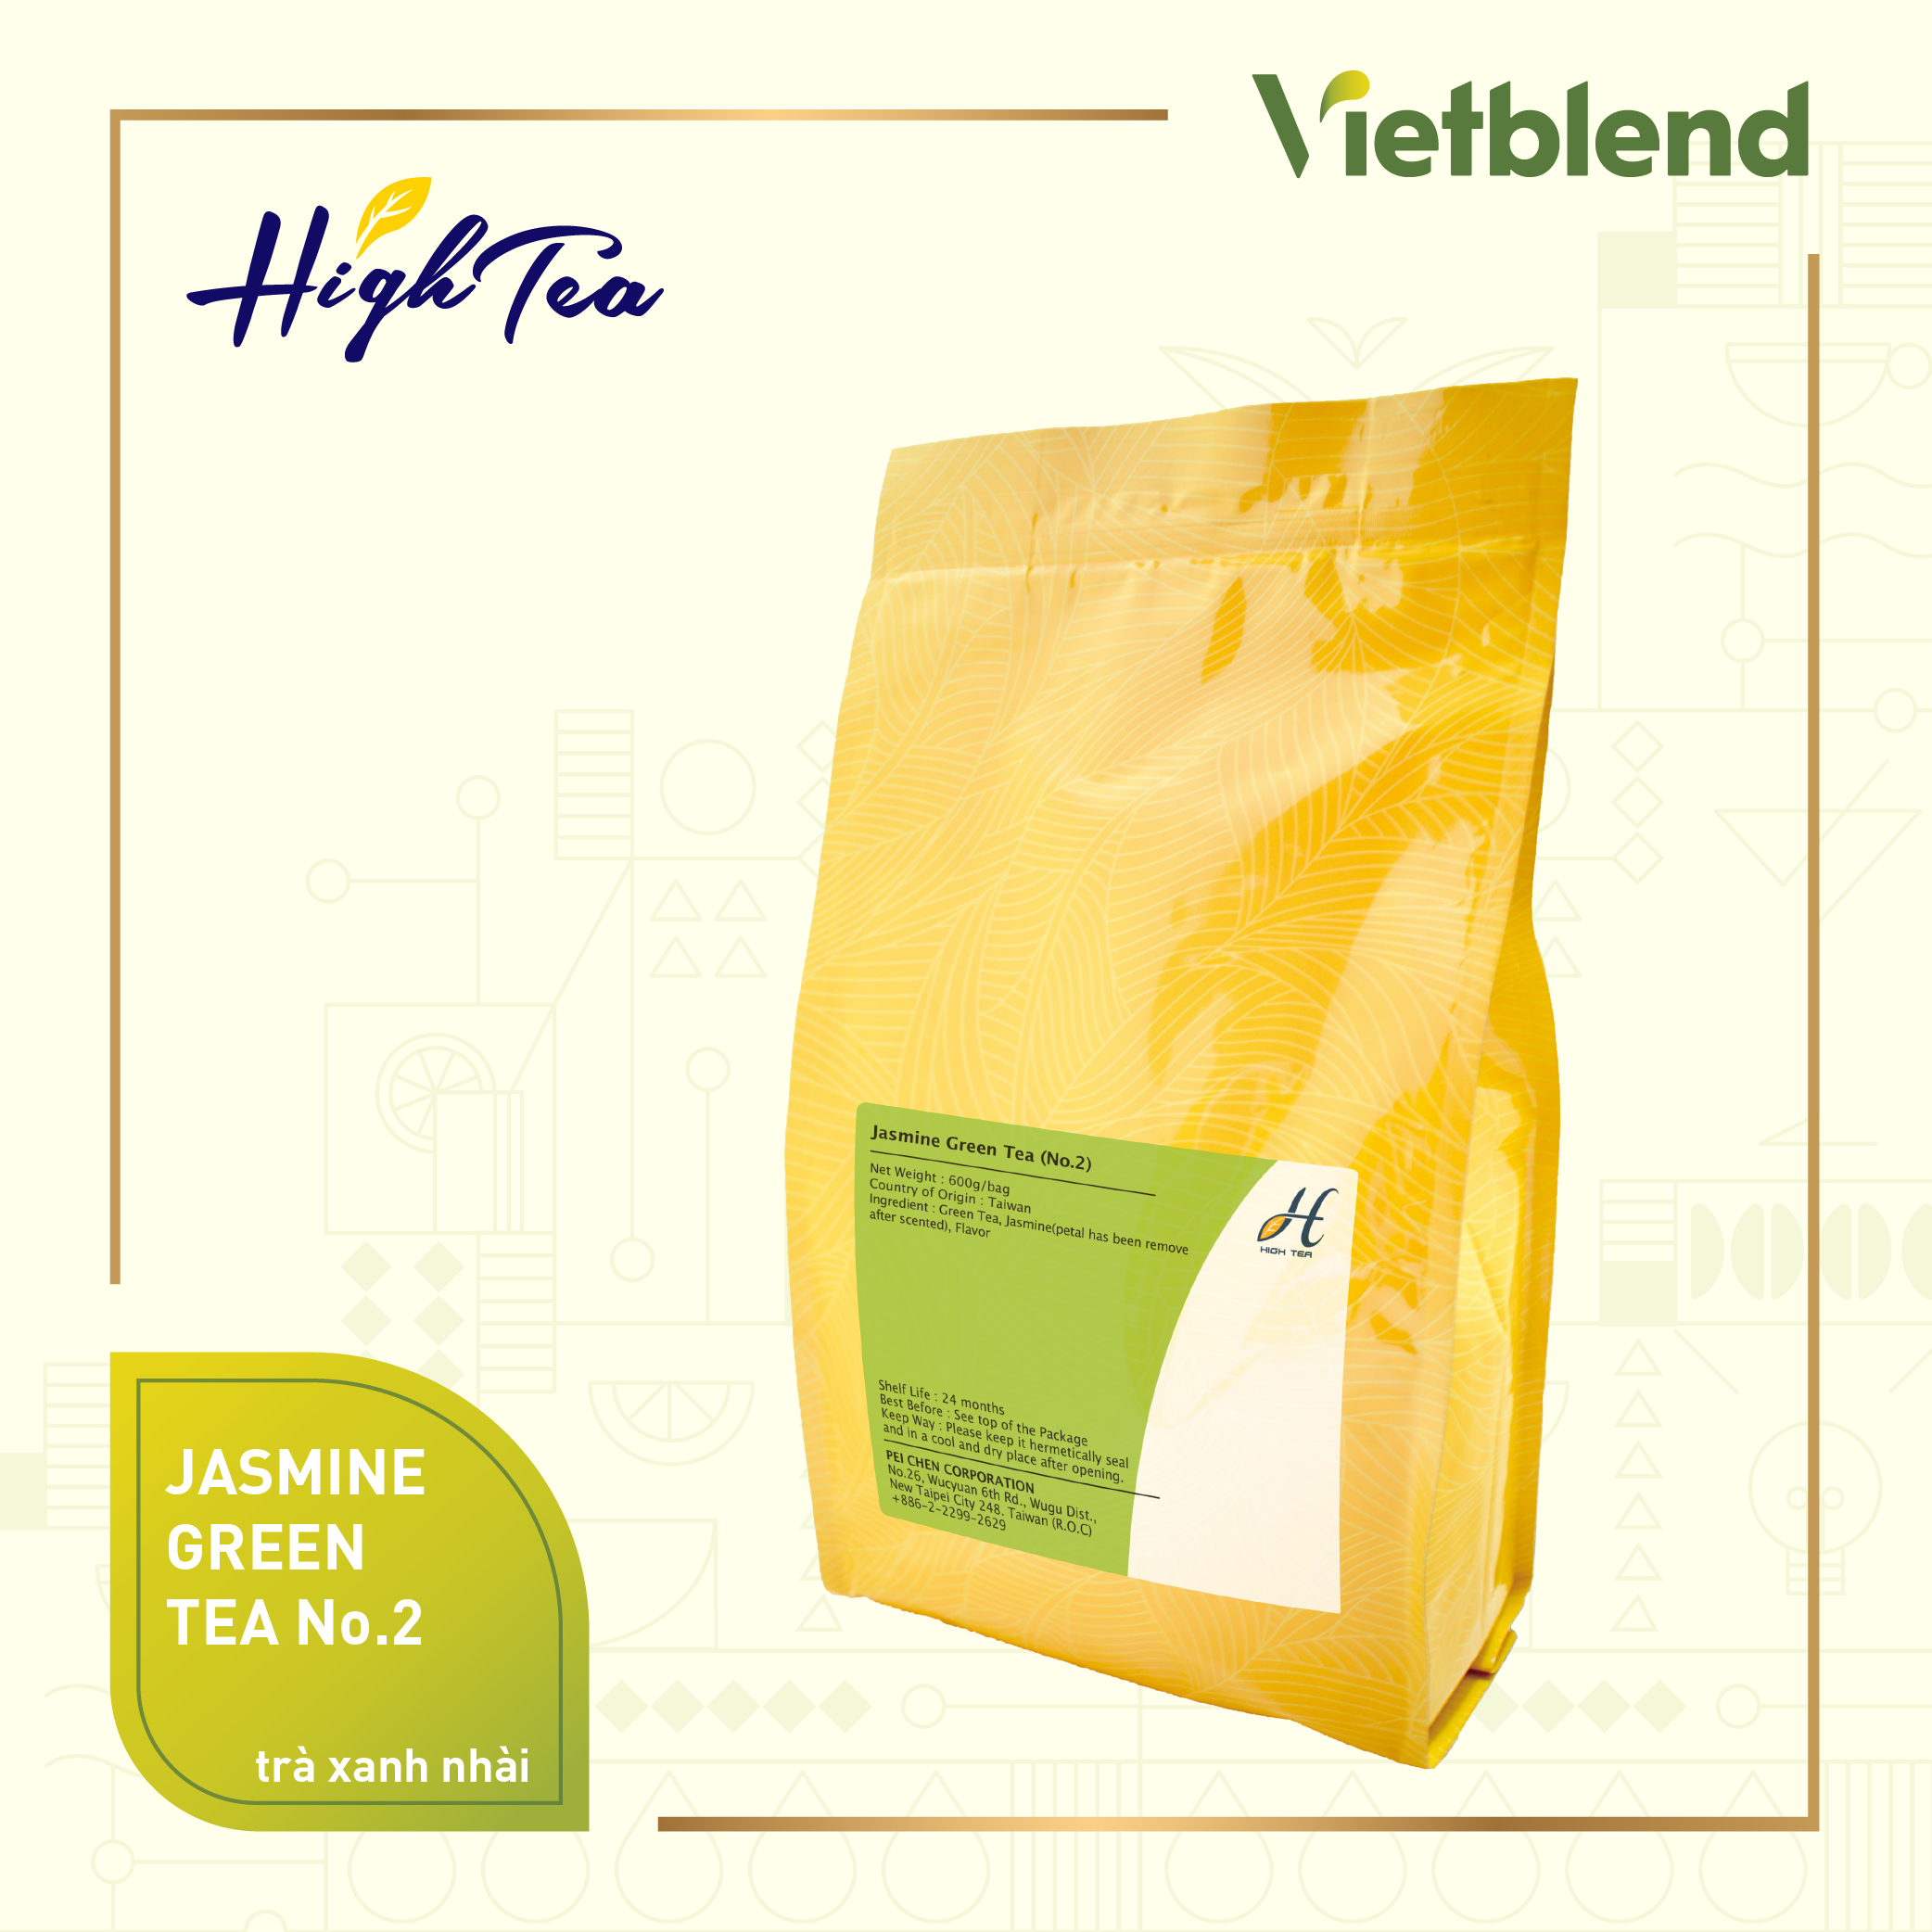 Jasmine Green Tea suitable for fruit tea 100% Taiwan made 600gr bag